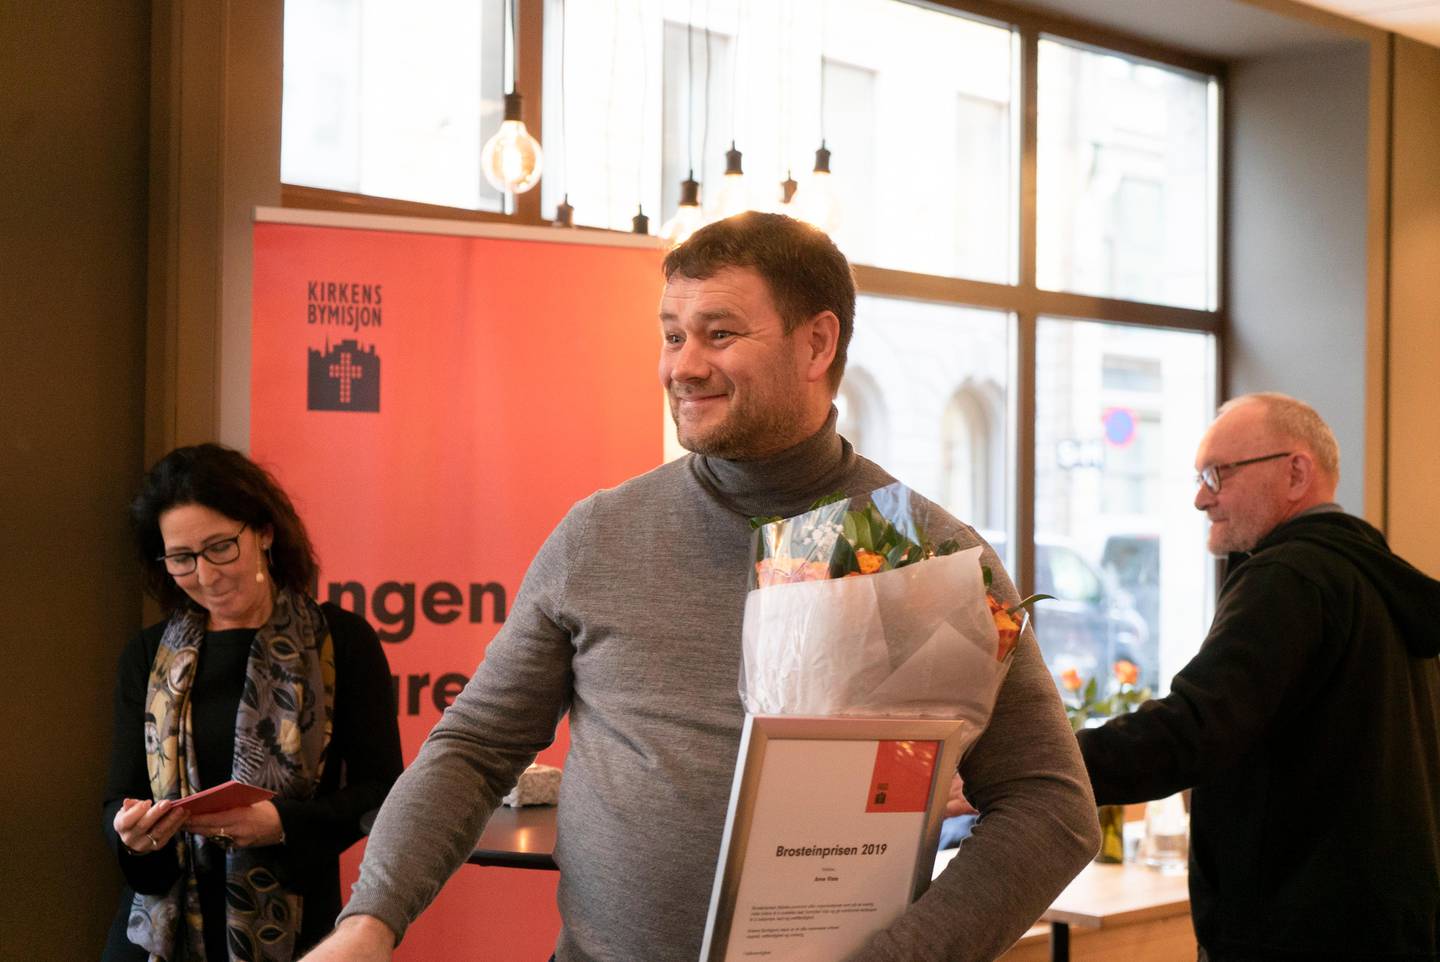 Kirkens Bymisjon gir Brosteinprisen til Mennesker i Limbo, Arne Viste og Gunnar Stålsett. Arne Viste mottar prisen.